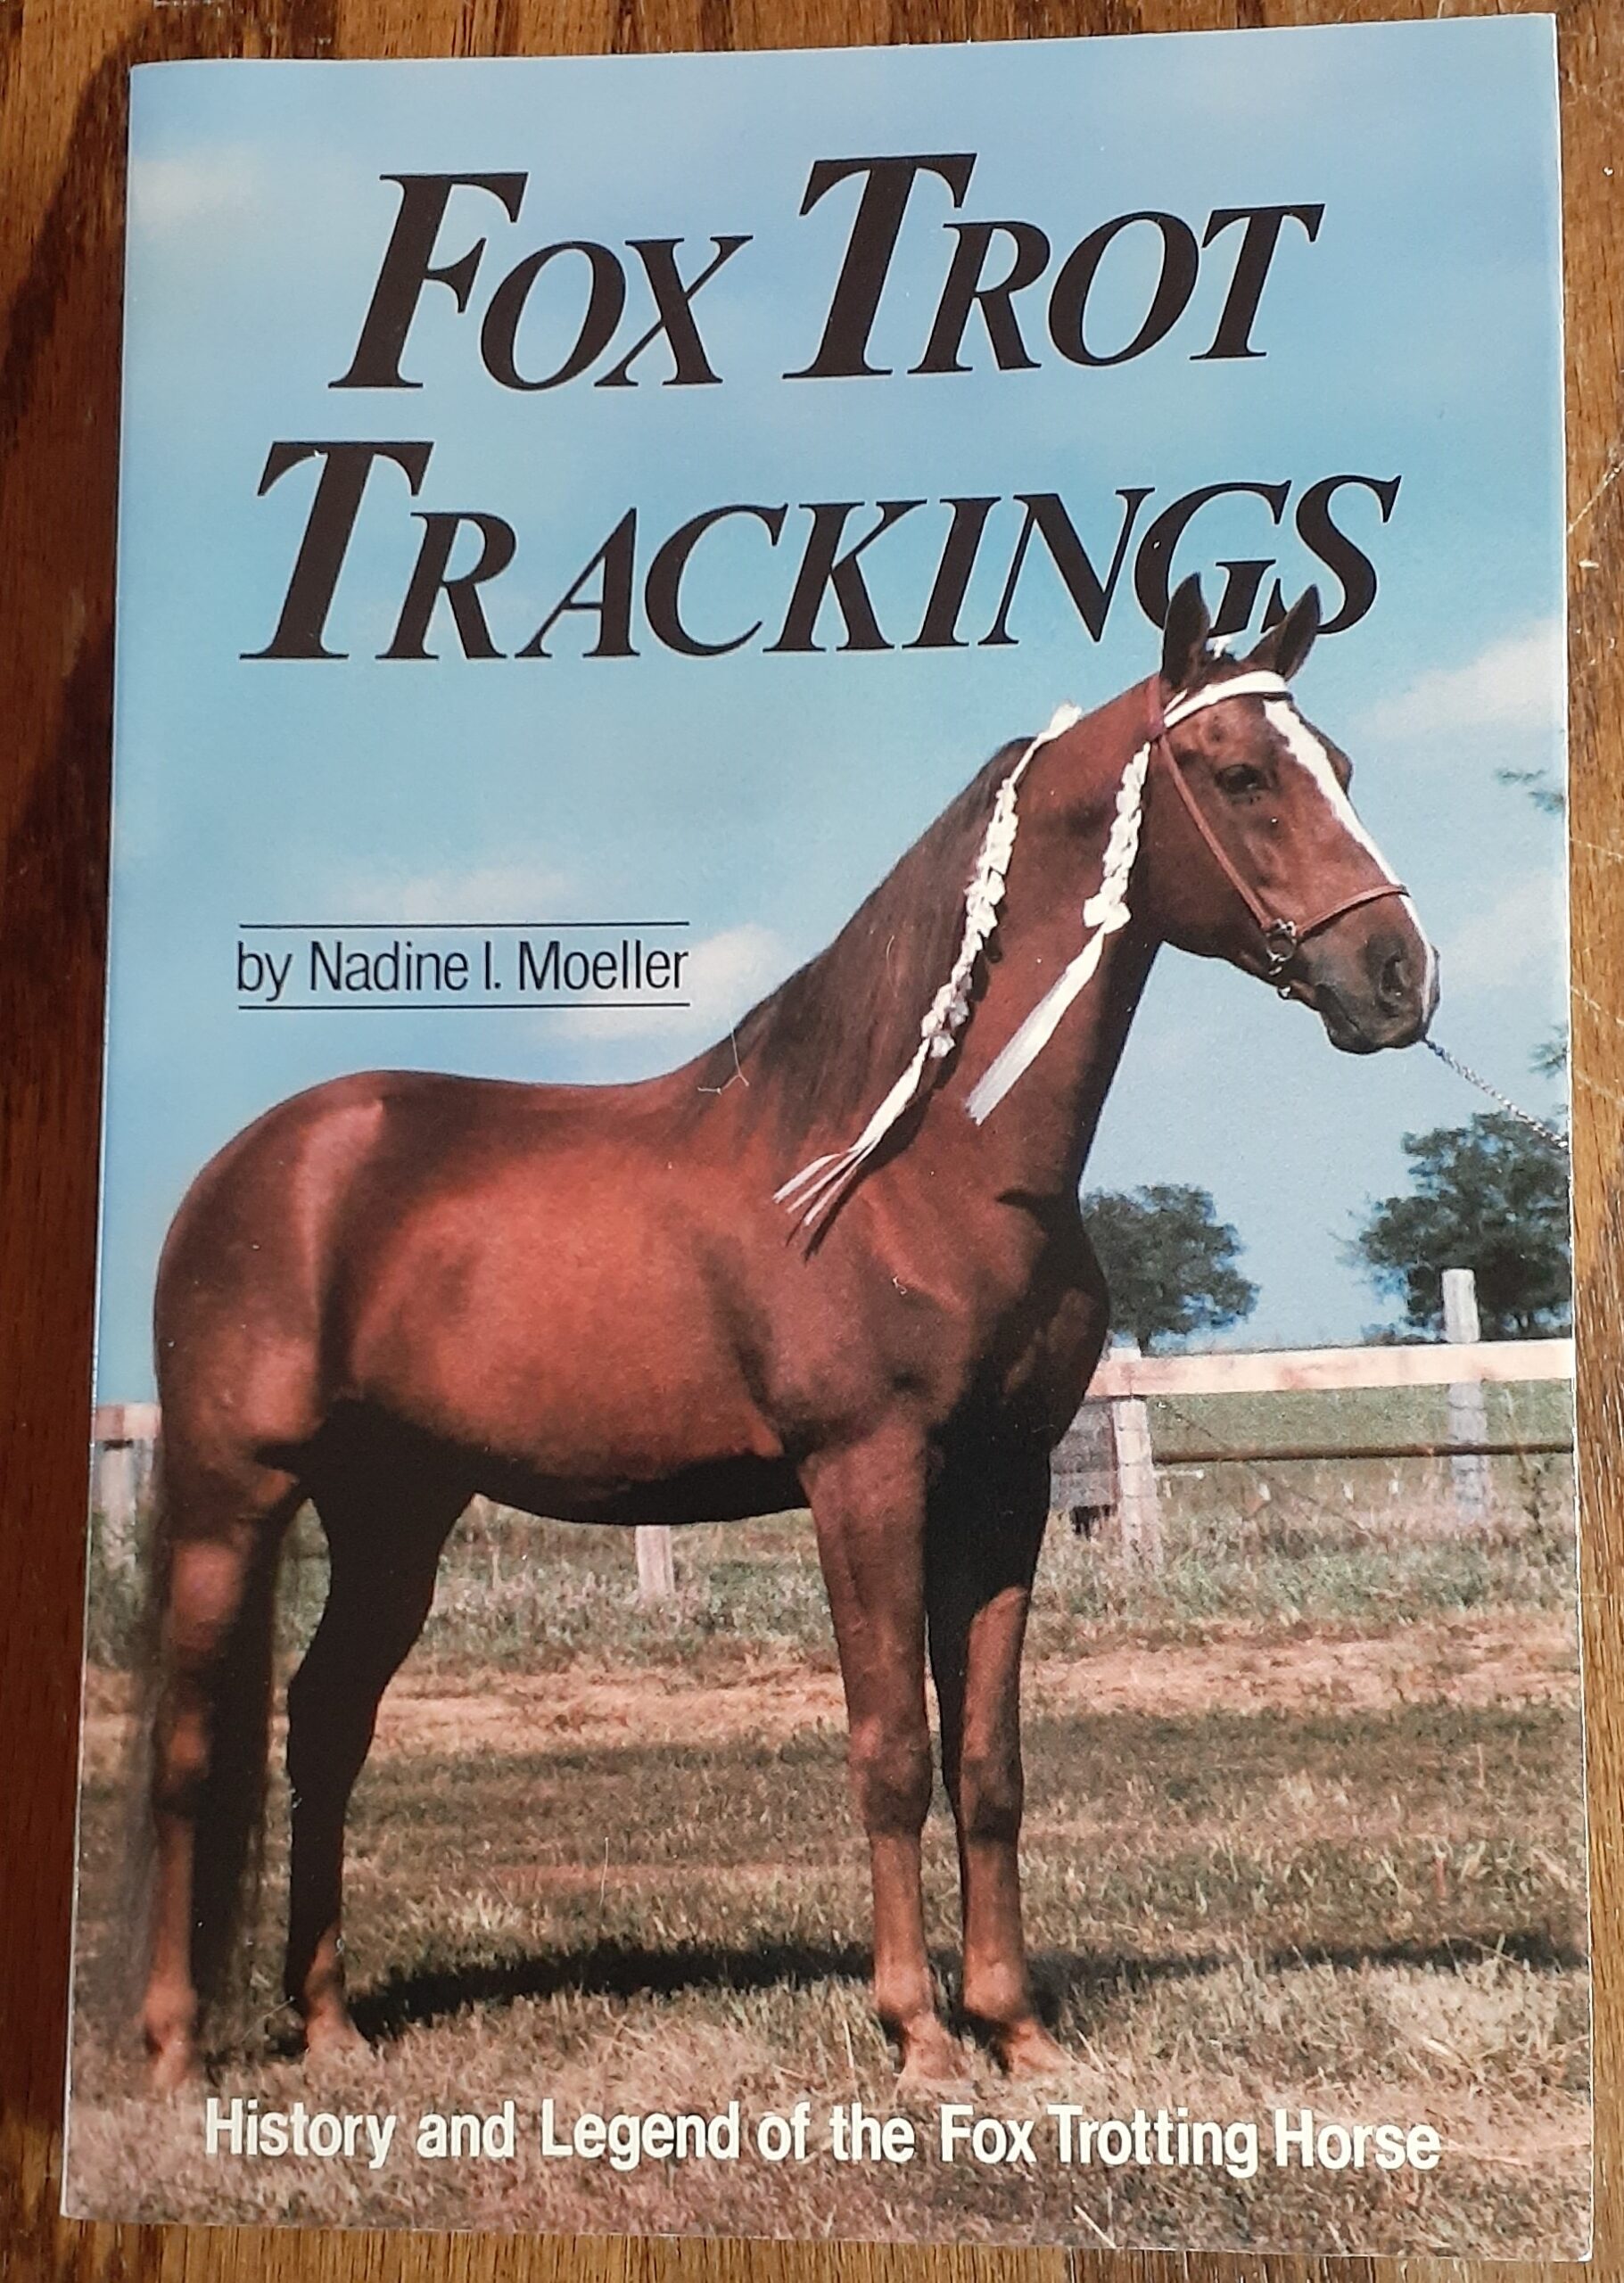 Fox Trot Trackings